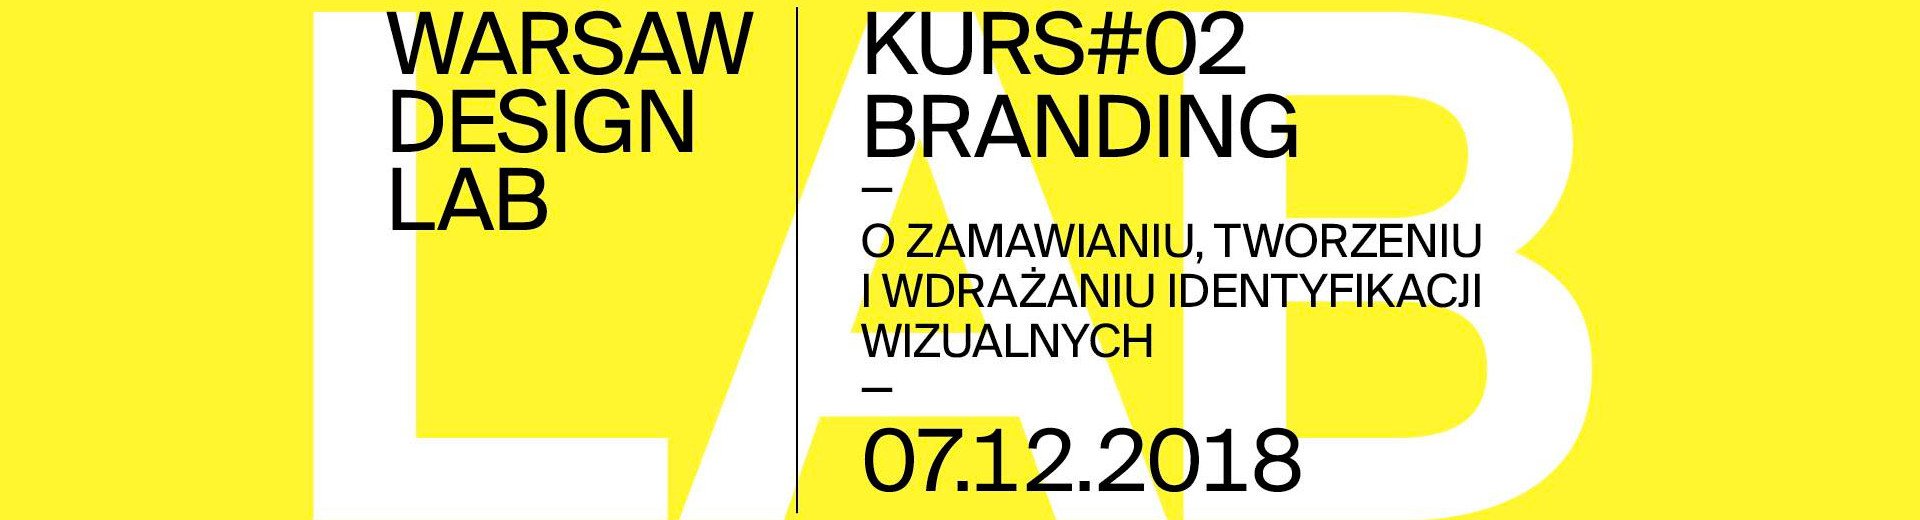 Okładka artykułu Drugi kurs Warsaw Design Lab — Branding: O zamawianiu, tworzeniu i wdrażaniu identyfikacji wizualnych